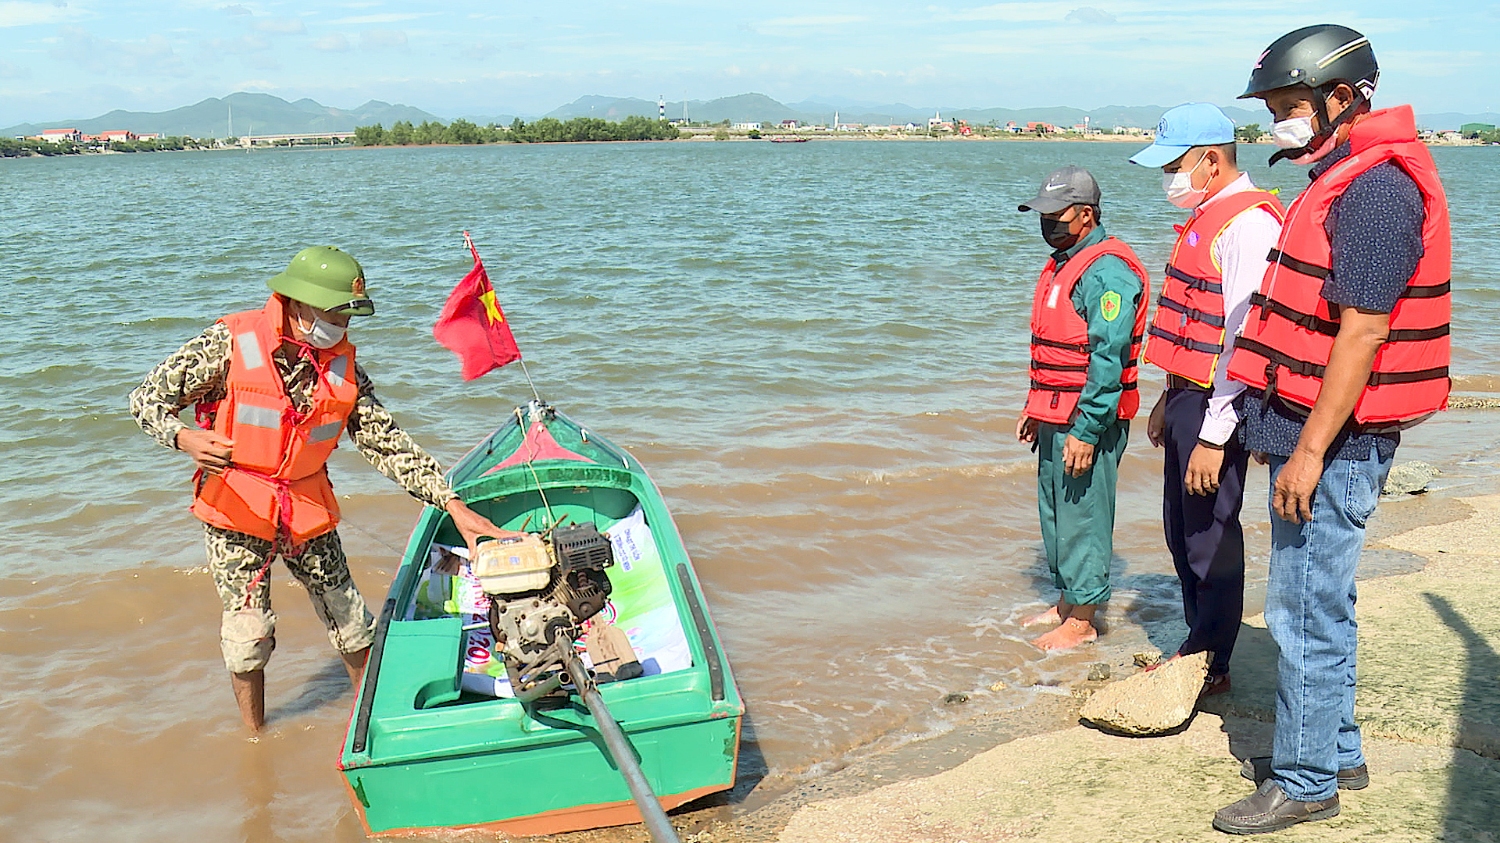 Hướng dẫn học viên kỹ năng lái thuyền cho đội xung kích, cứu nạn, cứu hộ của các địa phương.